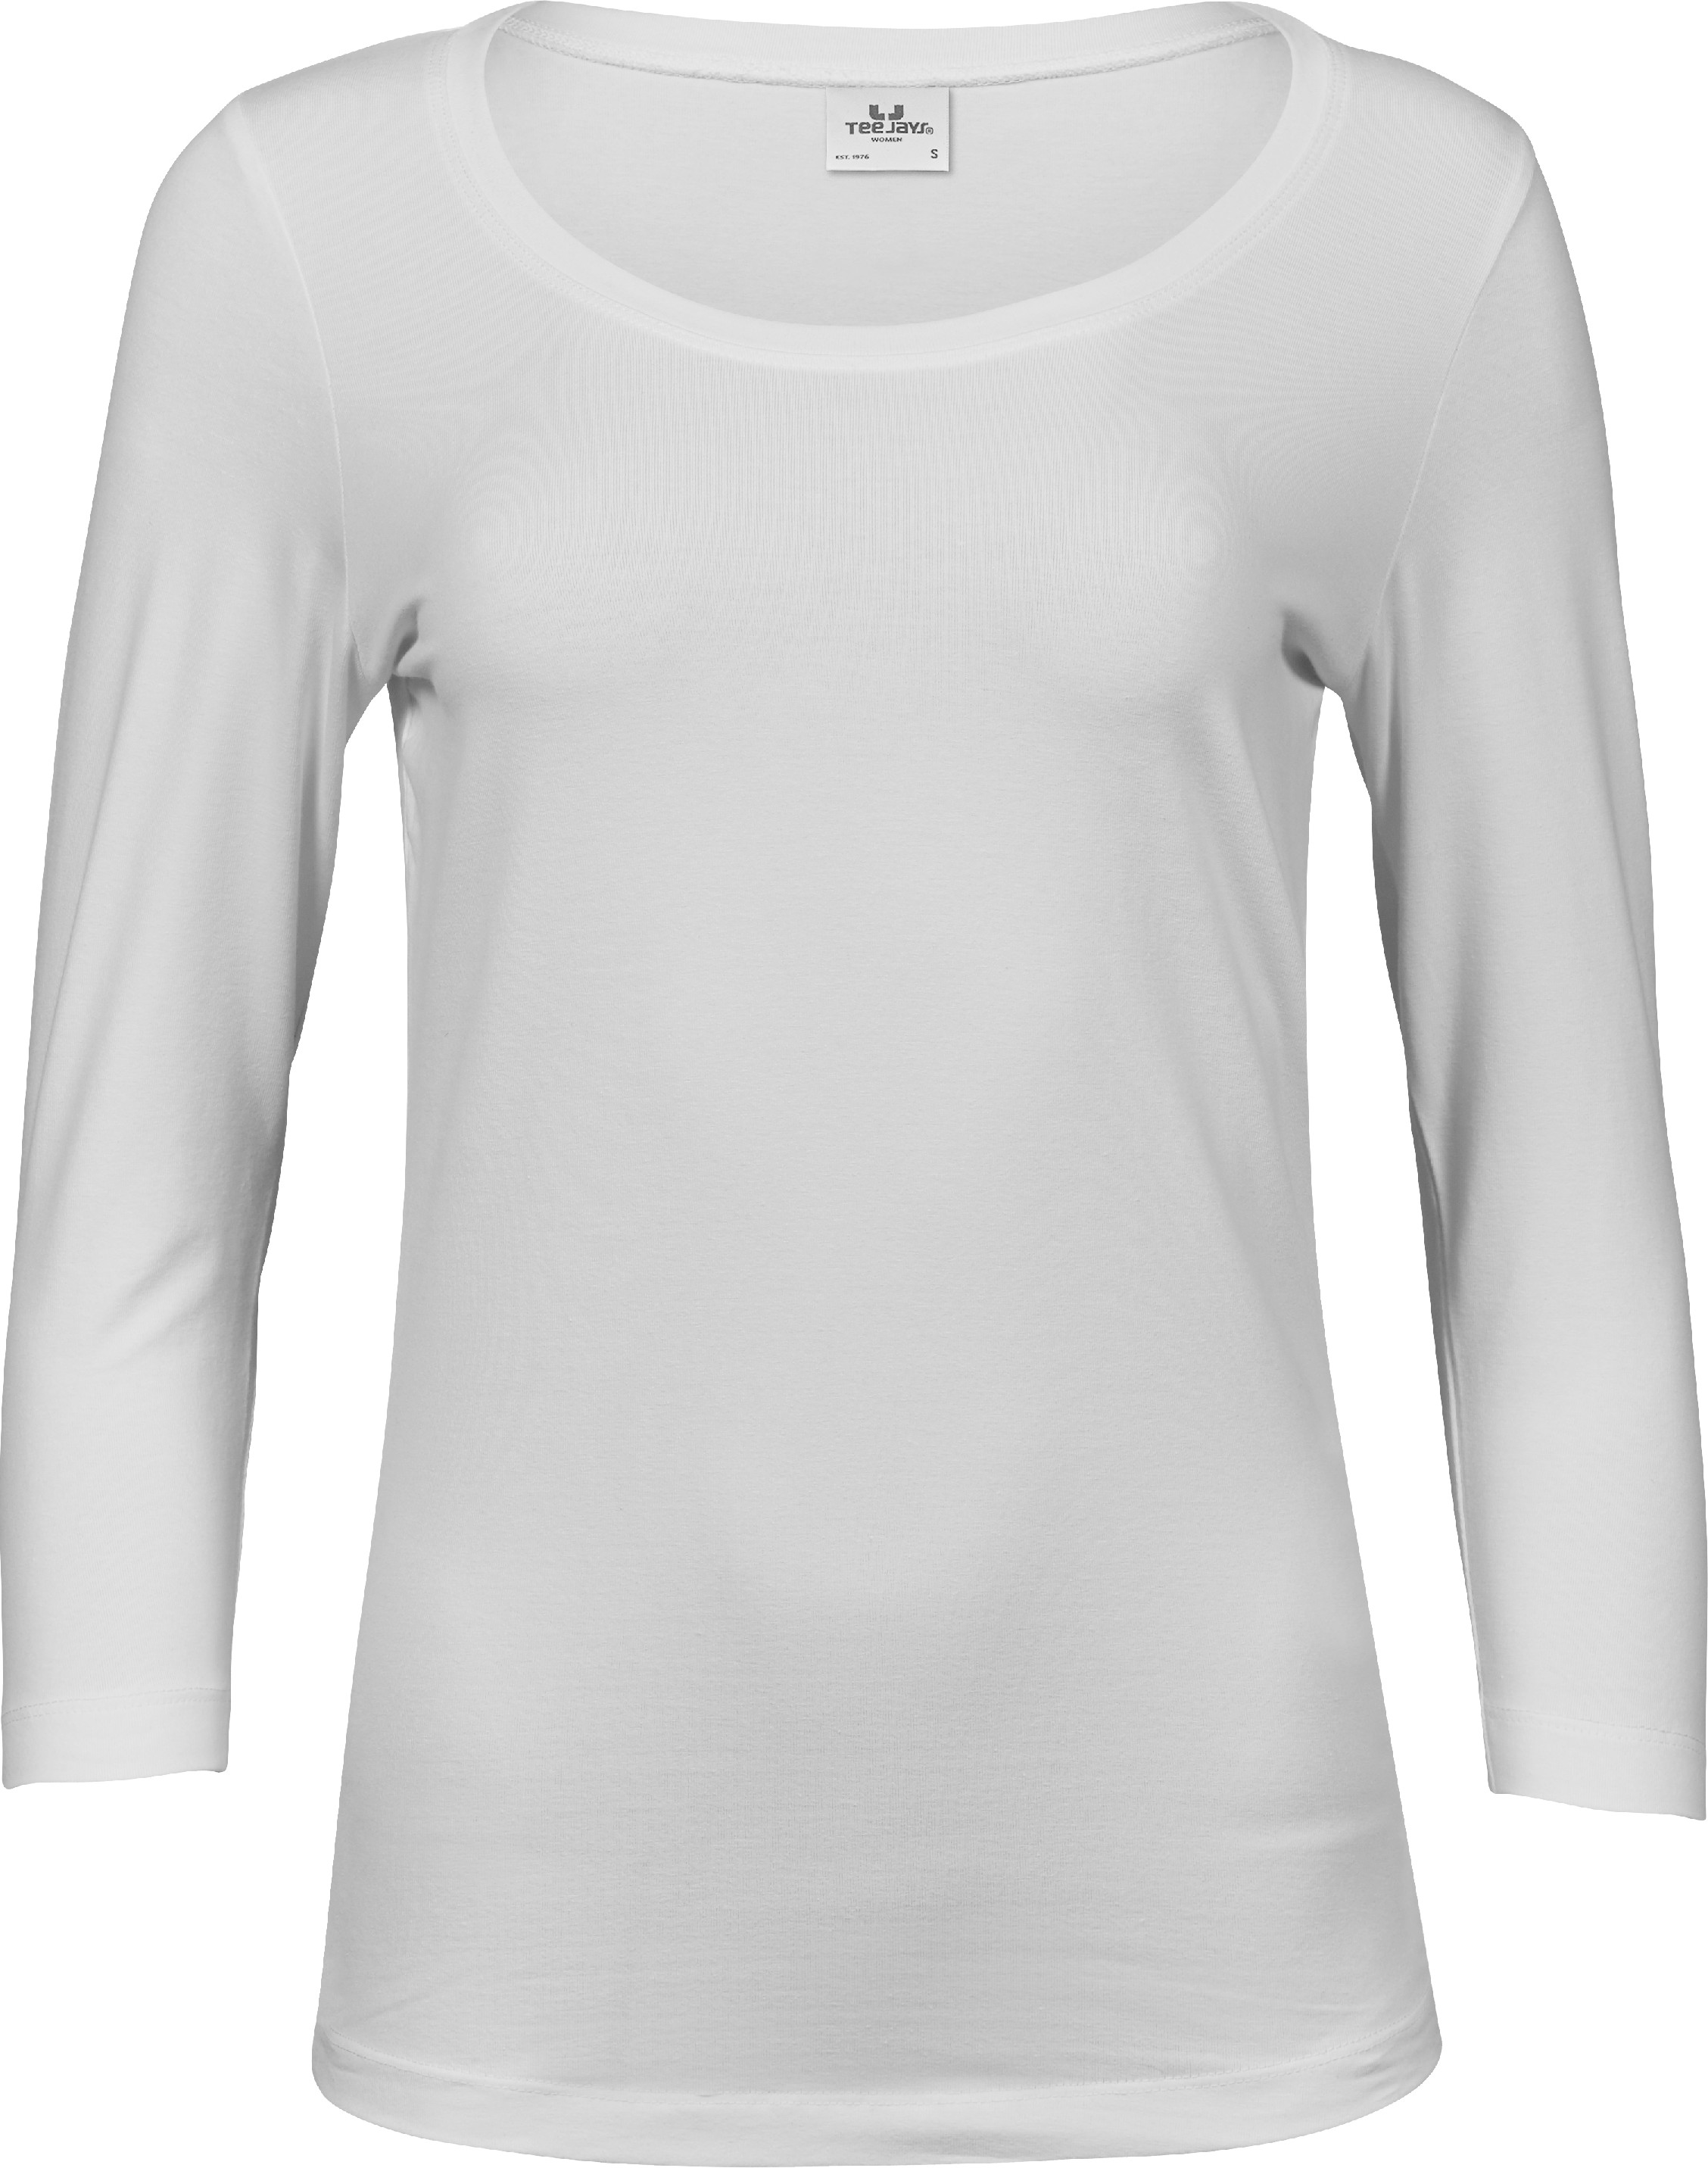 Dámské tričko 3/4 rukáv Stretch Tee Barva: bílá, Velikost: XL